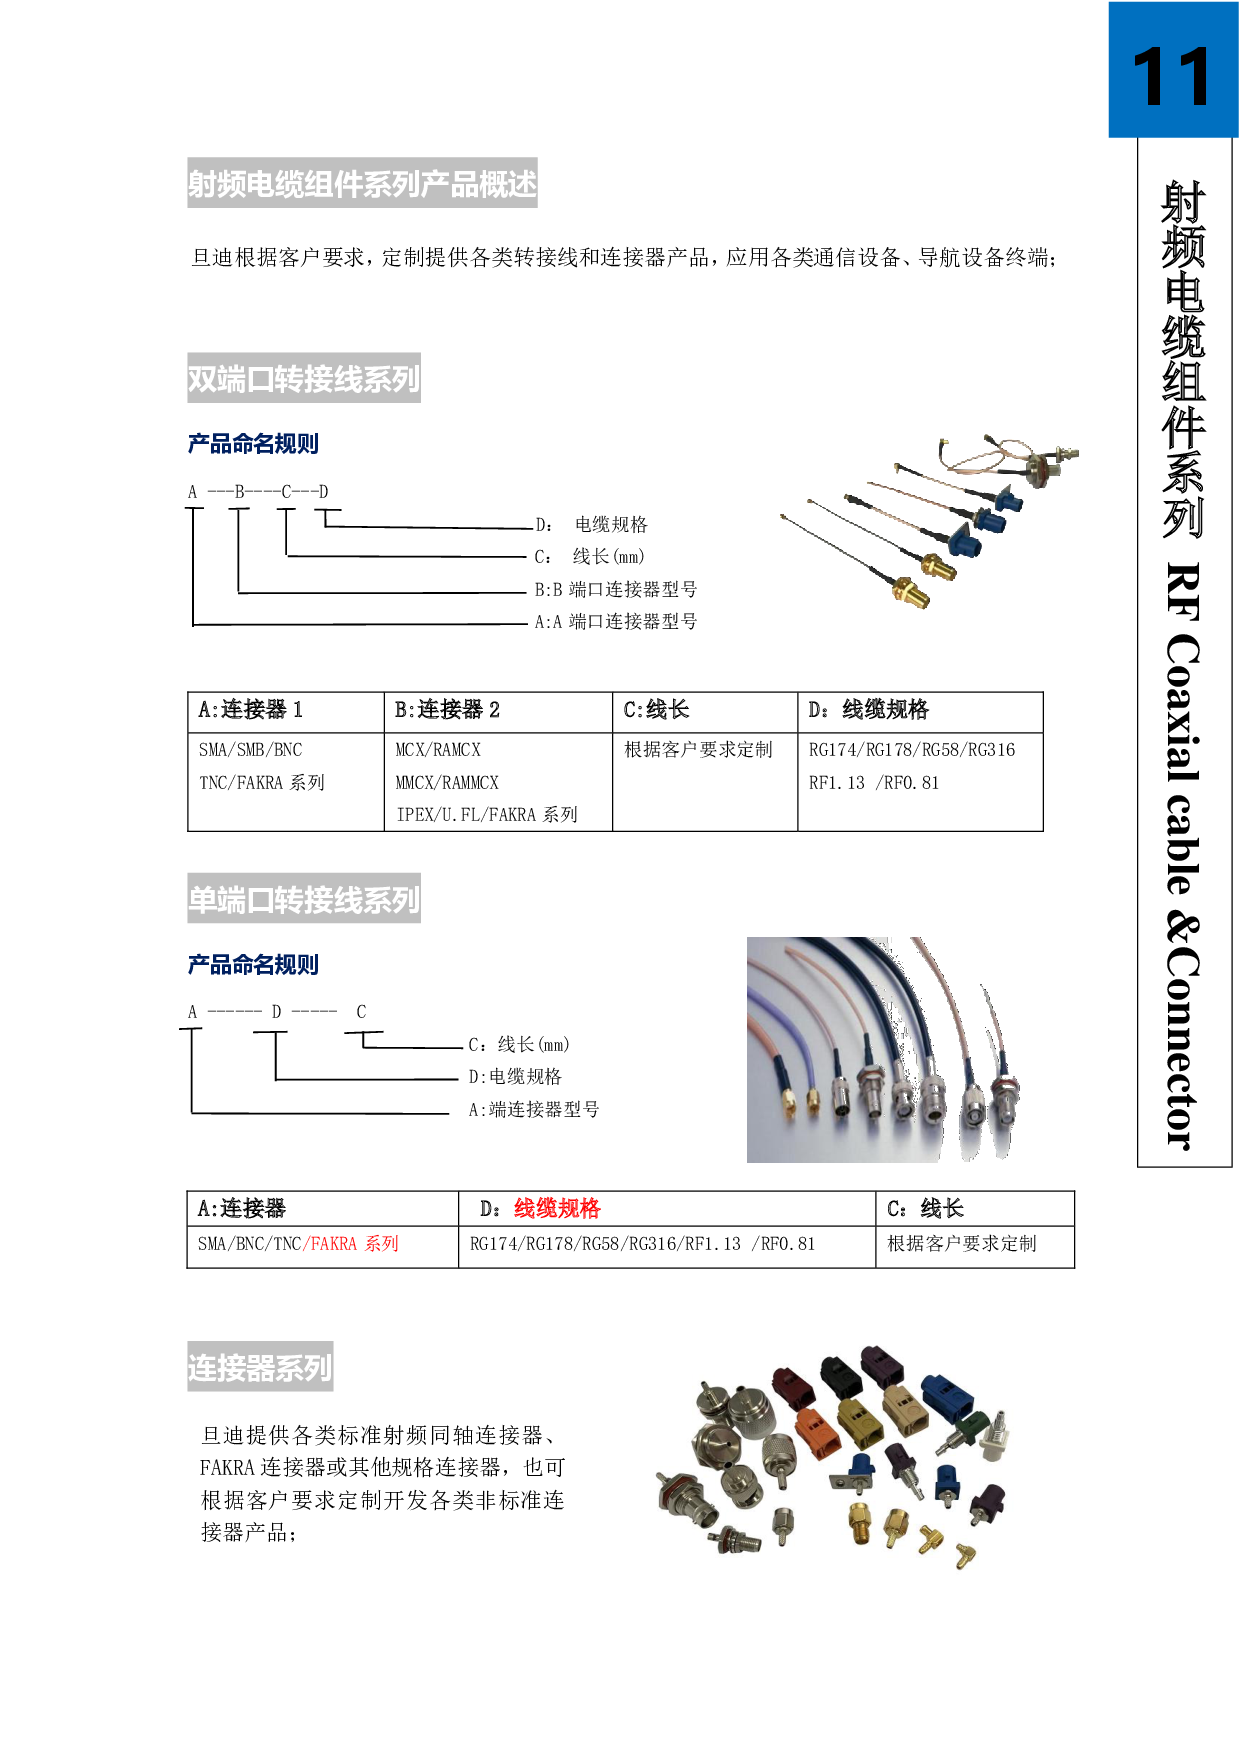 射频电缆组件系列产品-旦迪通信图片